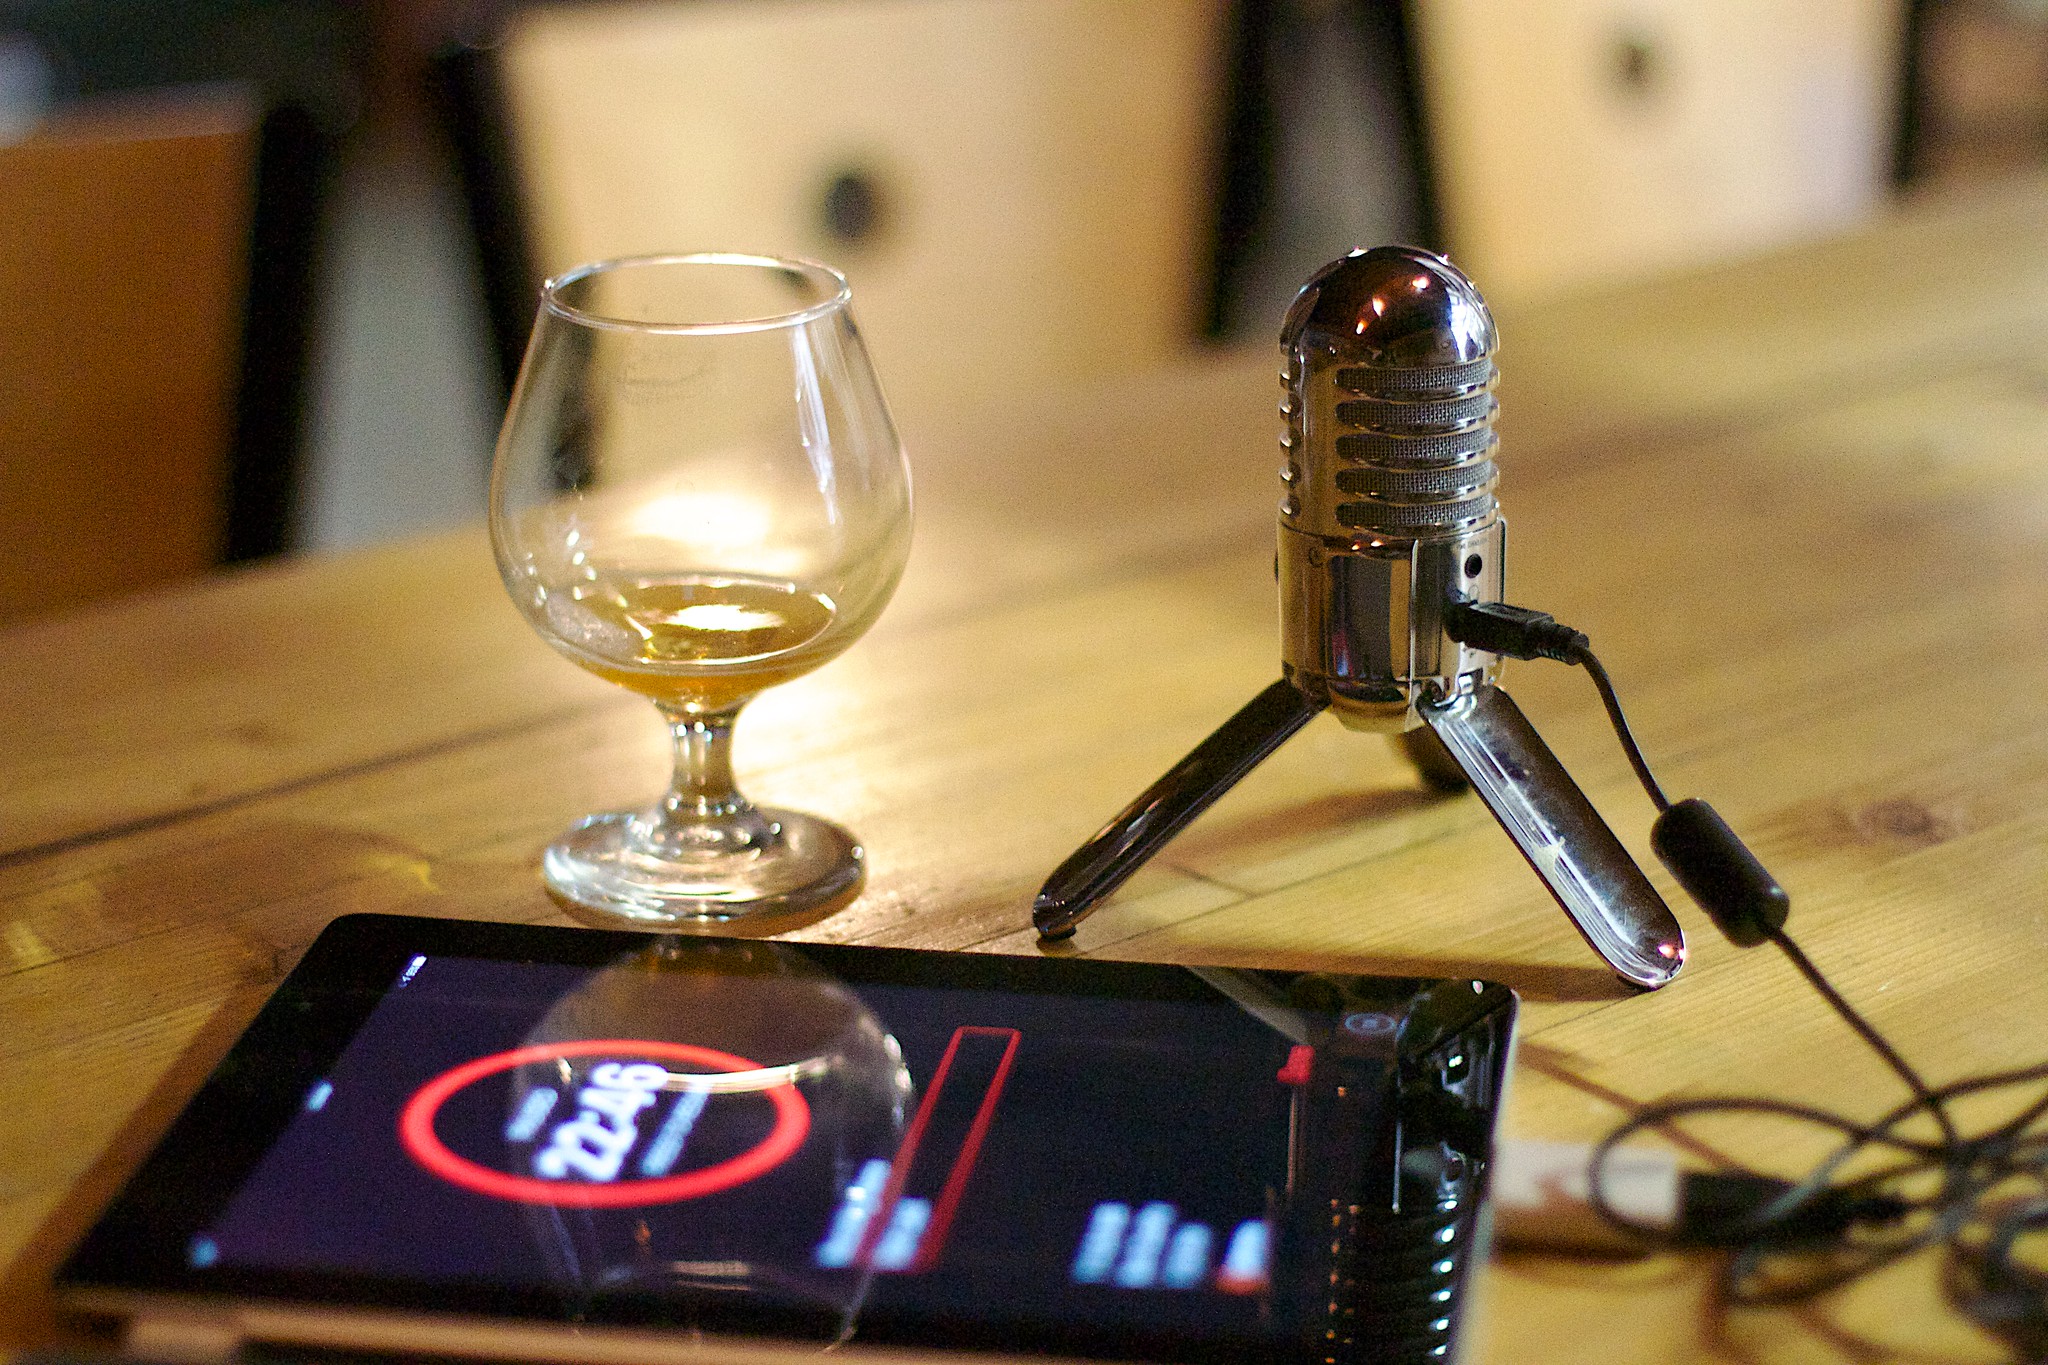 Podcast Equipment, Mikrofon, Tablet und ein Weinglas auf einem Tisch